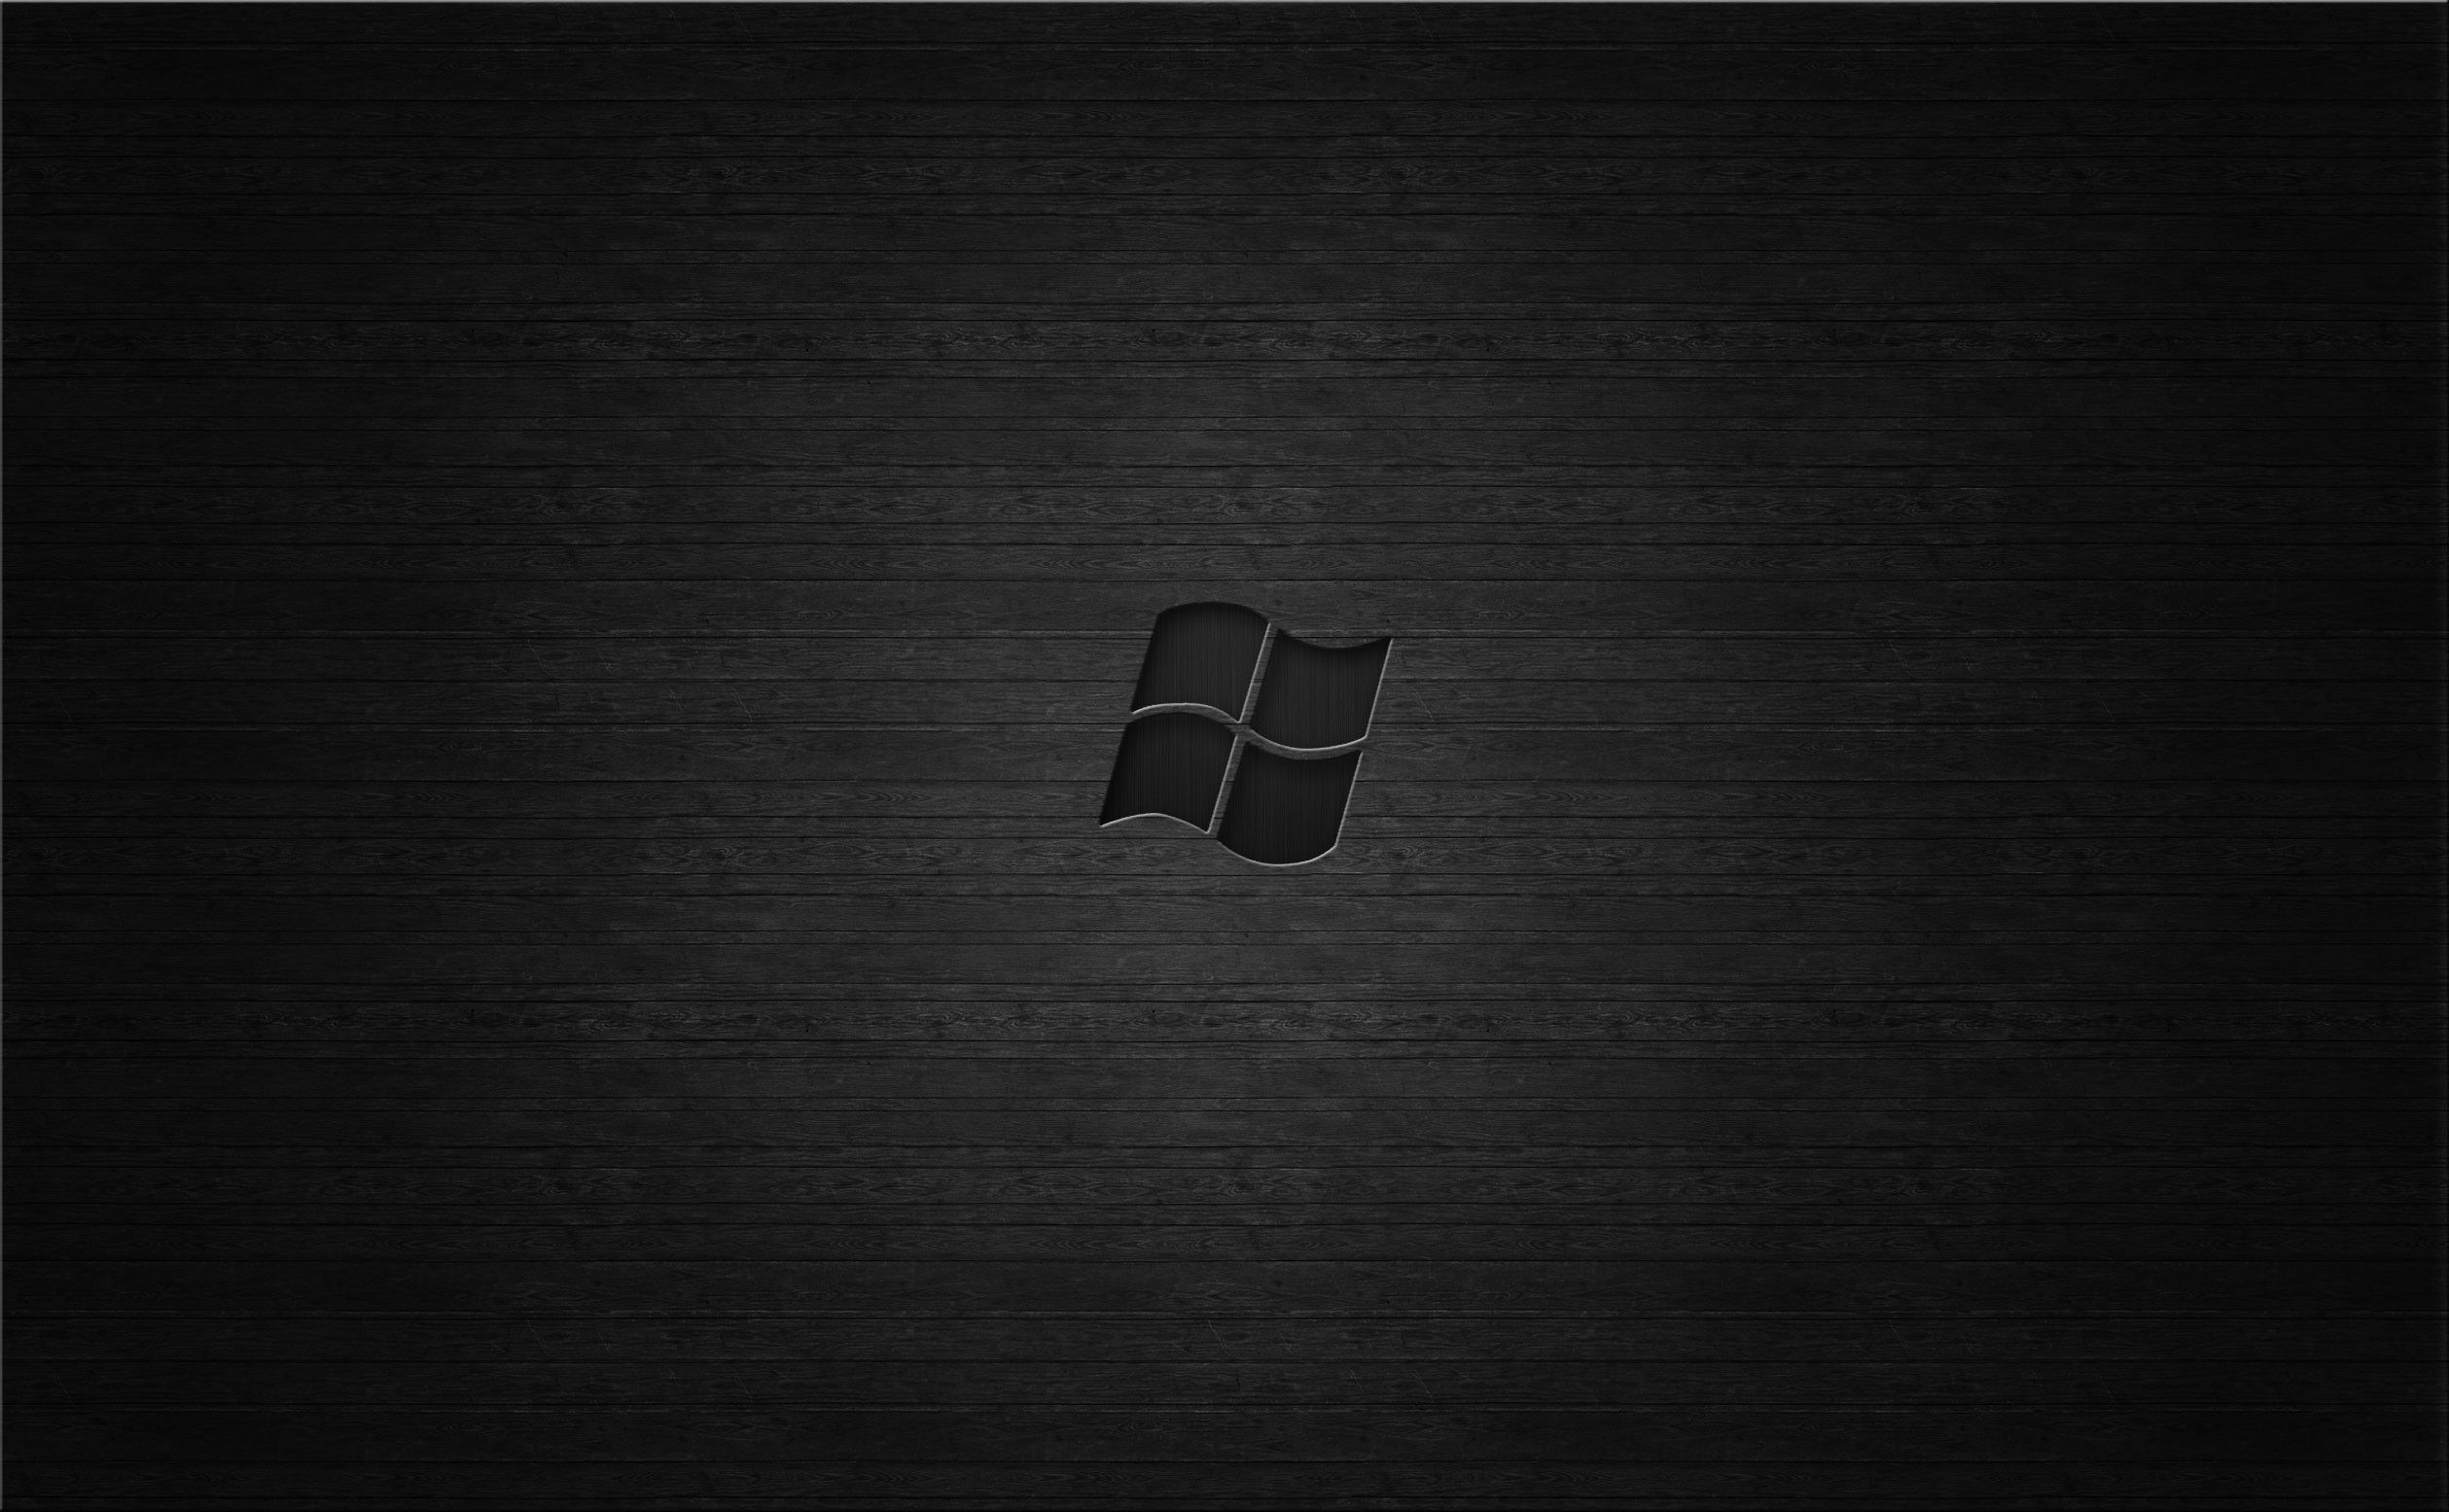 Nếu bạn đang tìm kiếm hình nền Windows 7 đen cho chiếc máy tính của mình, hãy đến với chúng tôi để tải miễn phí những hình ảnh đẹp mắt nhất. Không chỉ làm cho màn hình của bạn trở nên đặc biệt hơn, mà còn giúp tinh thần của bạn được sảng khoái hơn khi làm việc với máy tính.